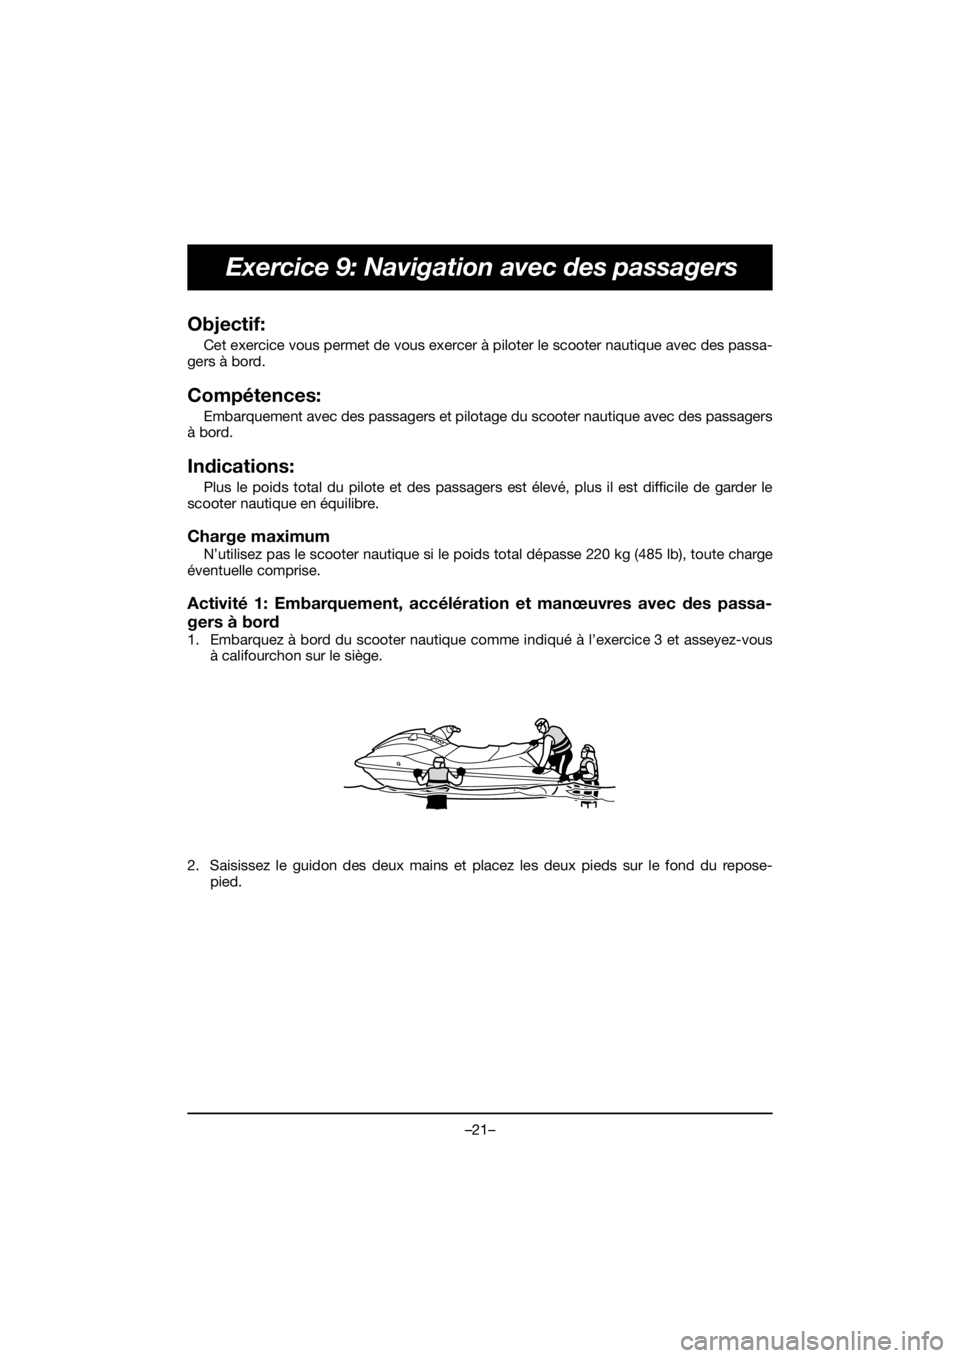 YAMAHA EX SPORT 2020  Notices Demploi (in French) –21–
Exercice 9: Navigation avec des passagers
Objectif: 
Cet exercice vous permet de vous exercer à piloter le scooter nautique avec des passa-
gers à bord.
Compétences: 
Embarquement avec des